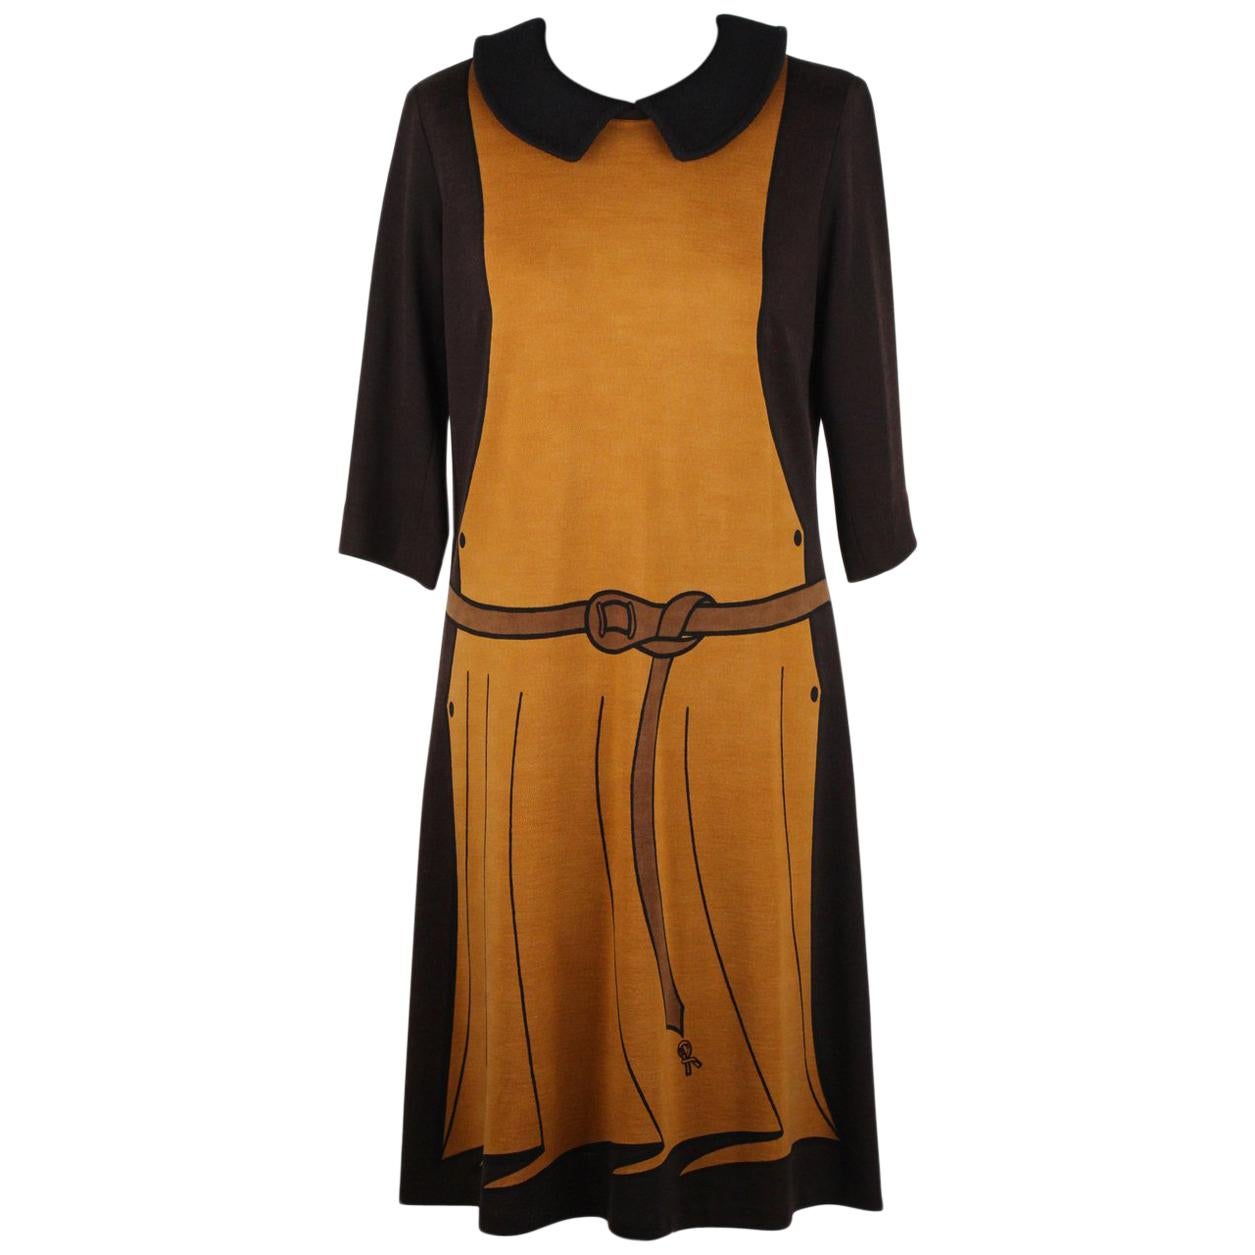 Roberta Di Camerino Vintage Trompe l'Oeil 3/4 Sleeve Dress Size 48